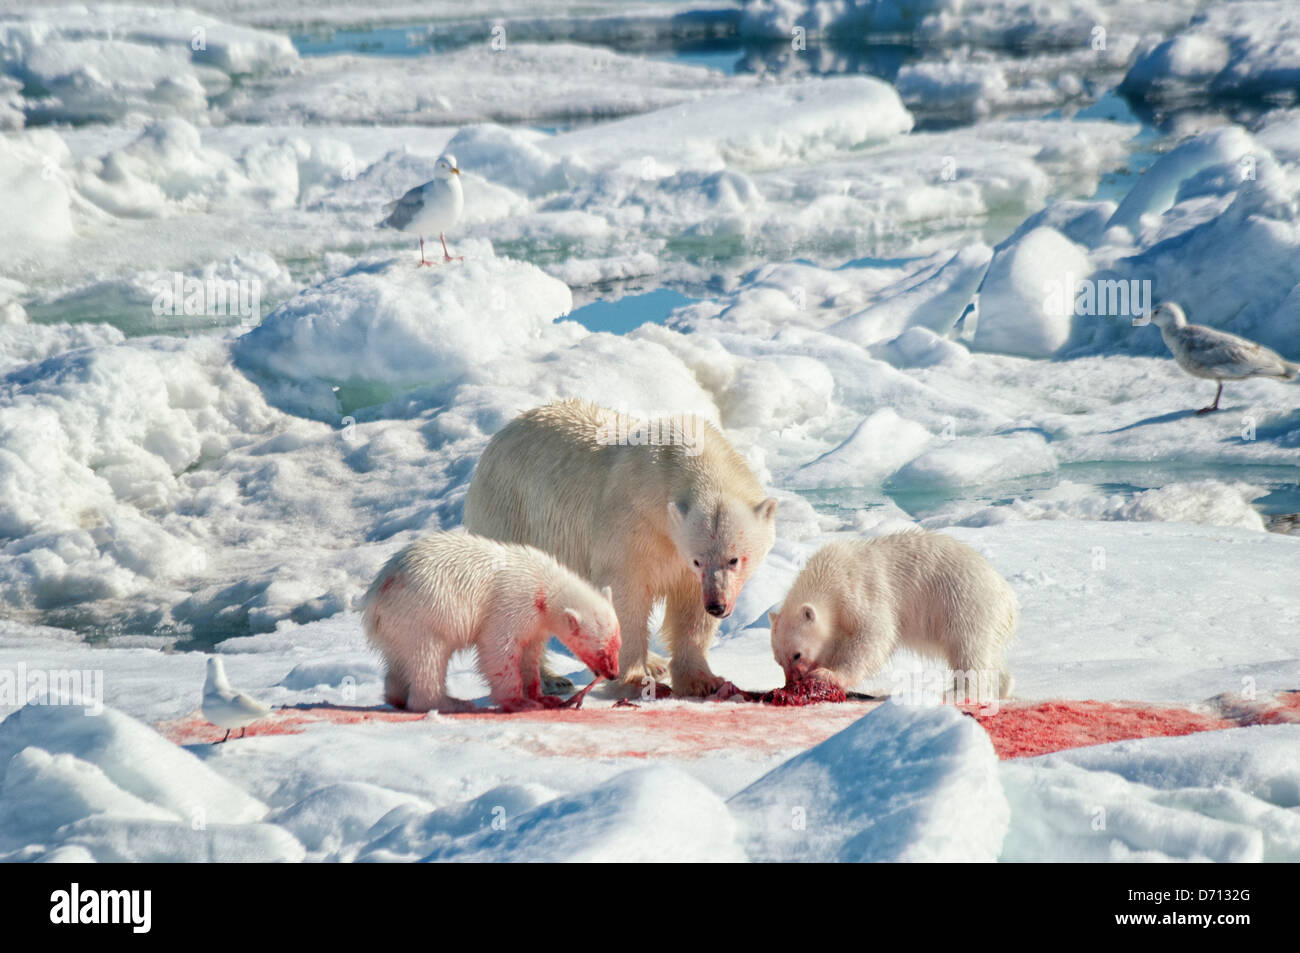 N°7 dans une série d'images d'une mère Ours blanc, Ursus maritimus, traquant un sceau pour nourrir ses deux oursons, Svalbard, Norvège Banque D'Images